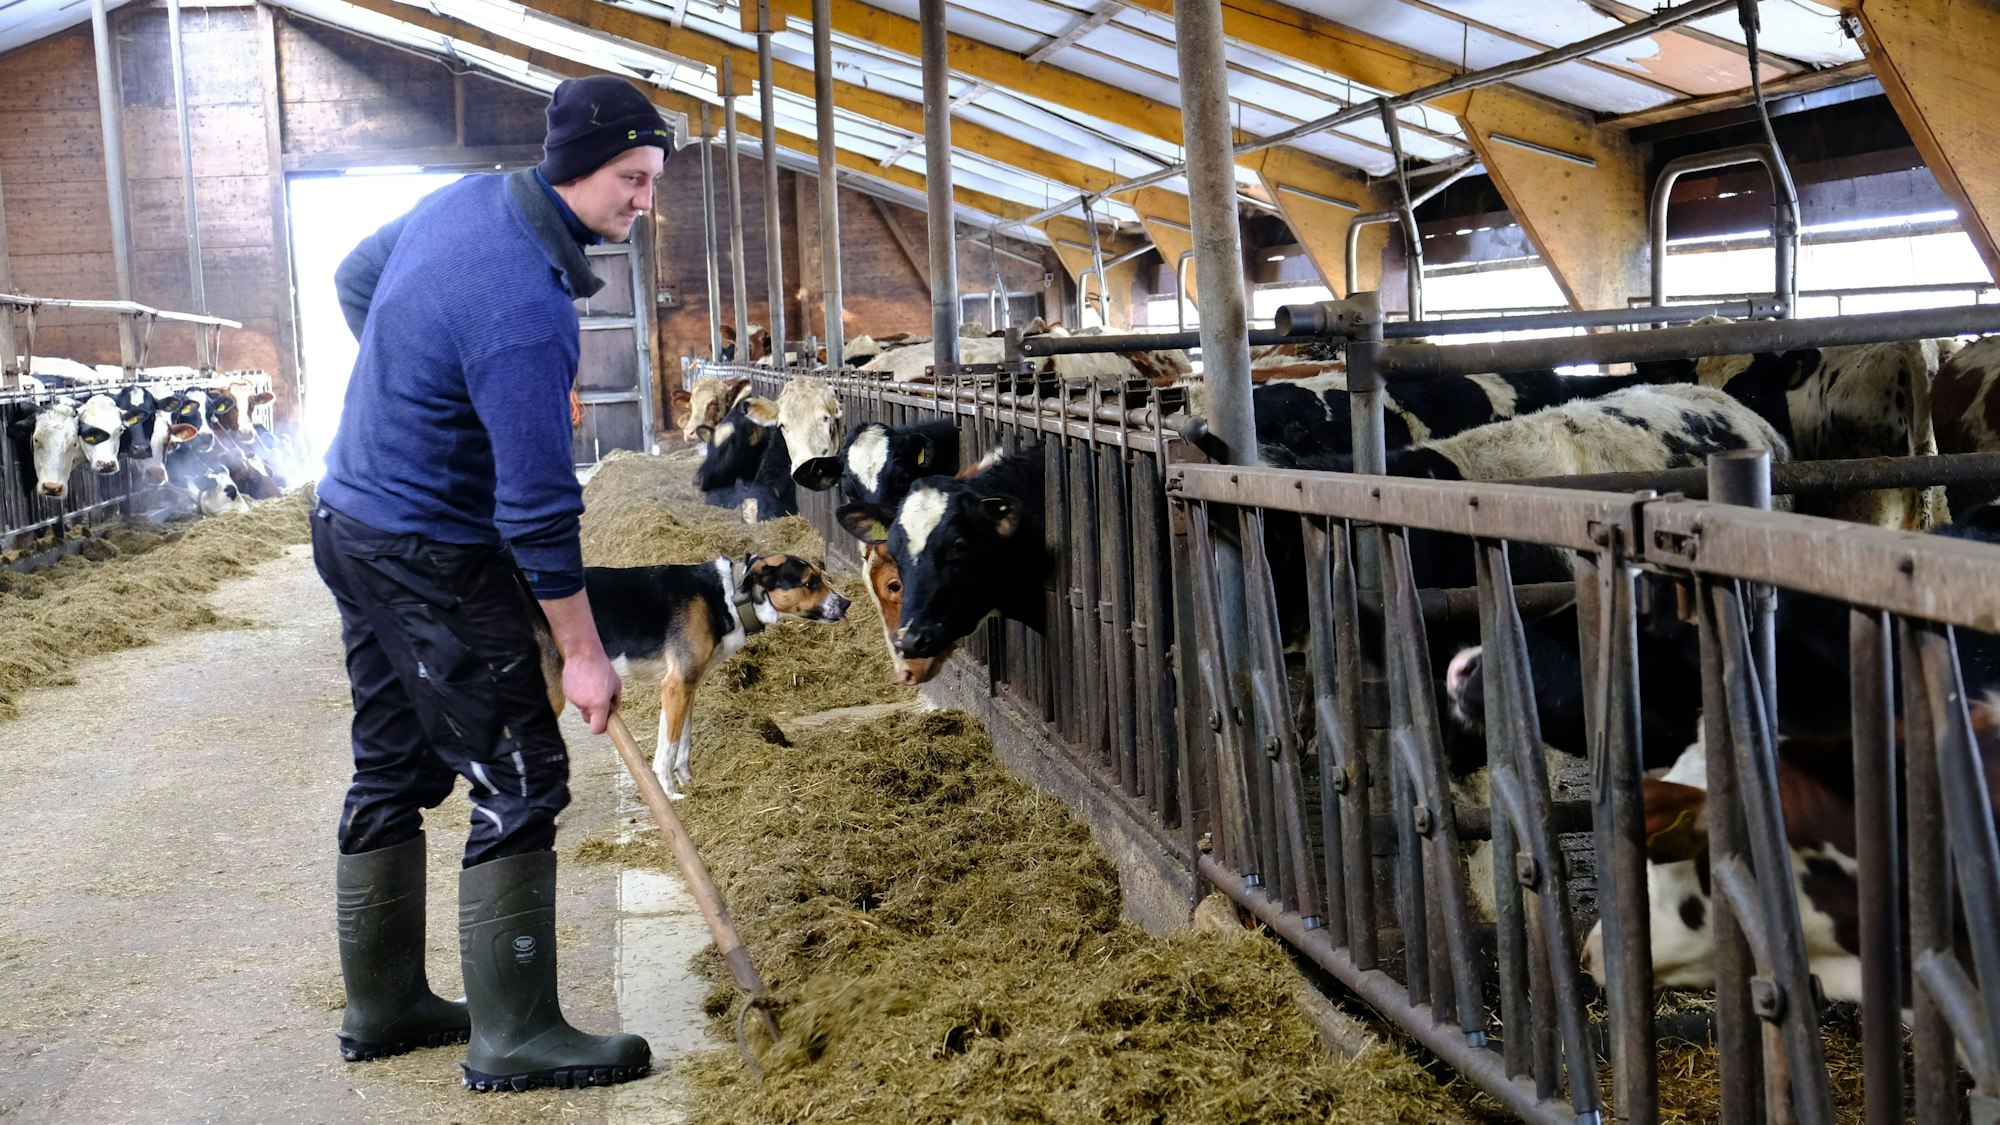 Milchbauer Rainer Berlingen versorgt seine Kühe im Stall.